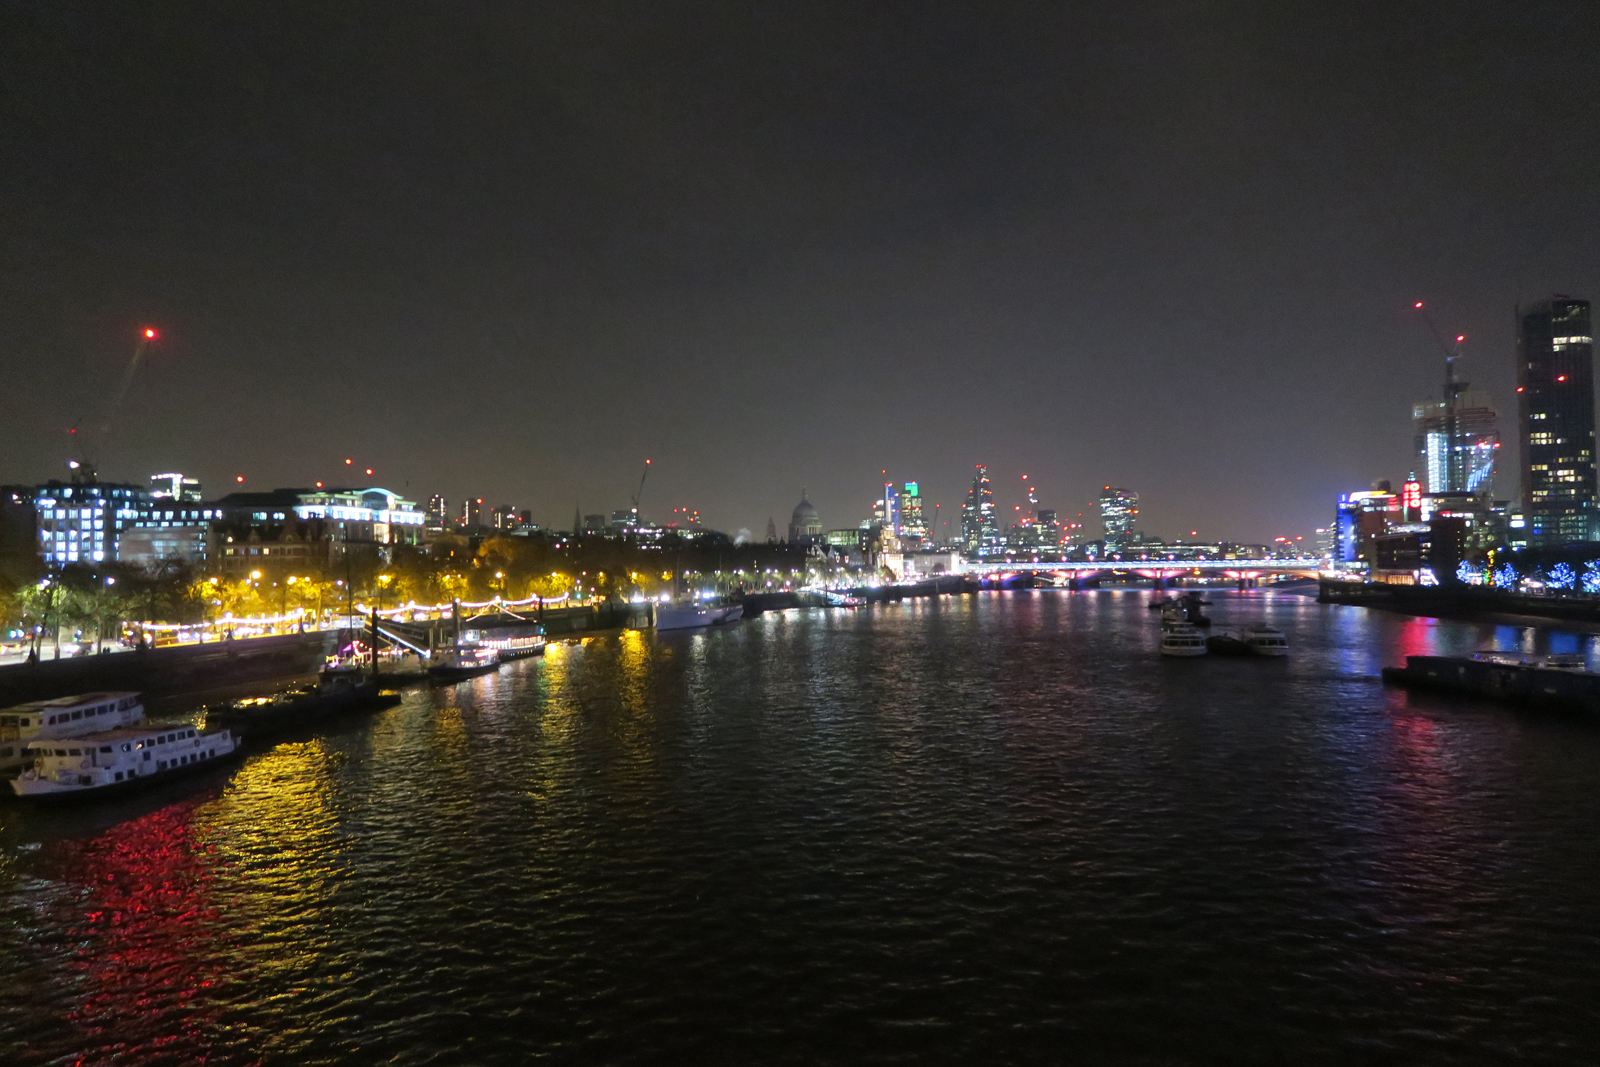 28-River-Thames-at-night-26_11_16